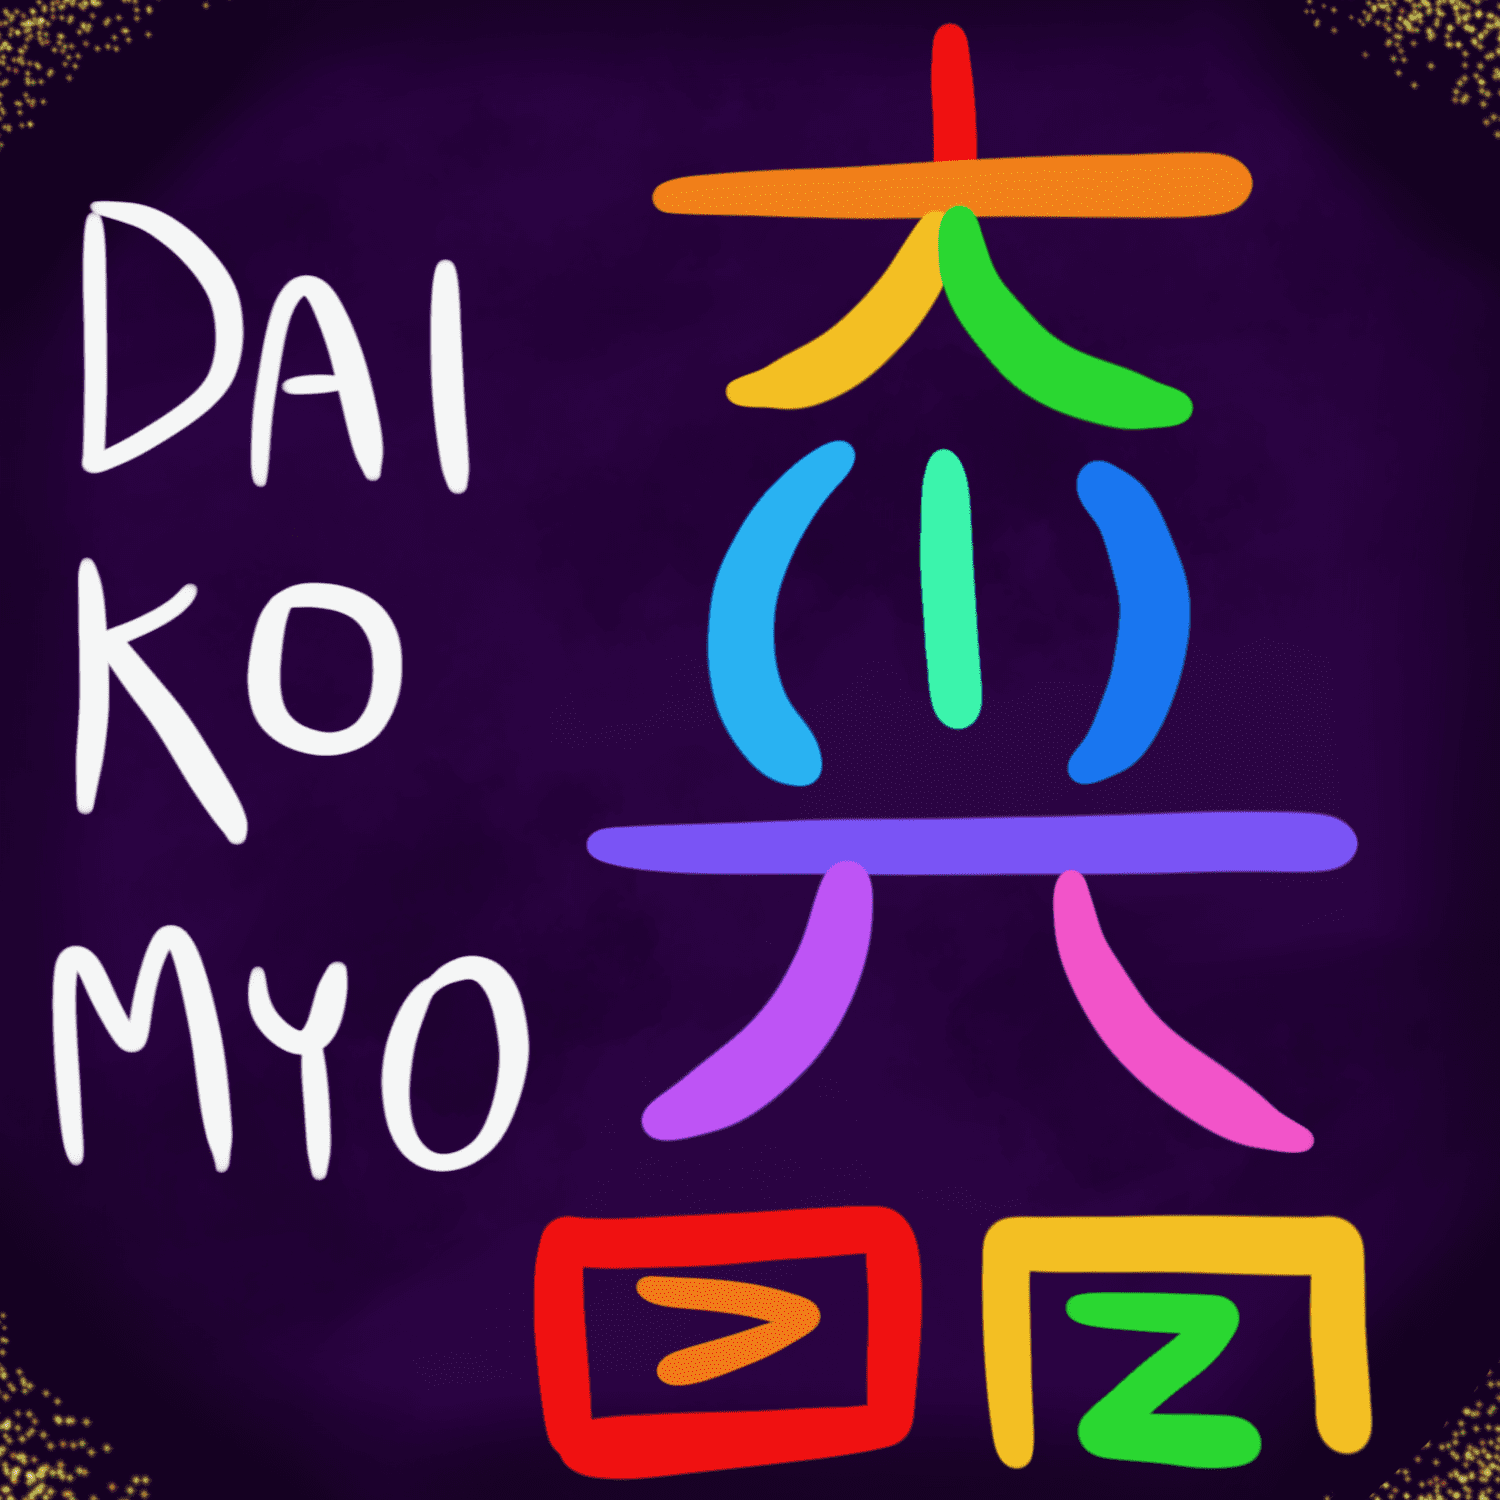 Dai ko myo symbol